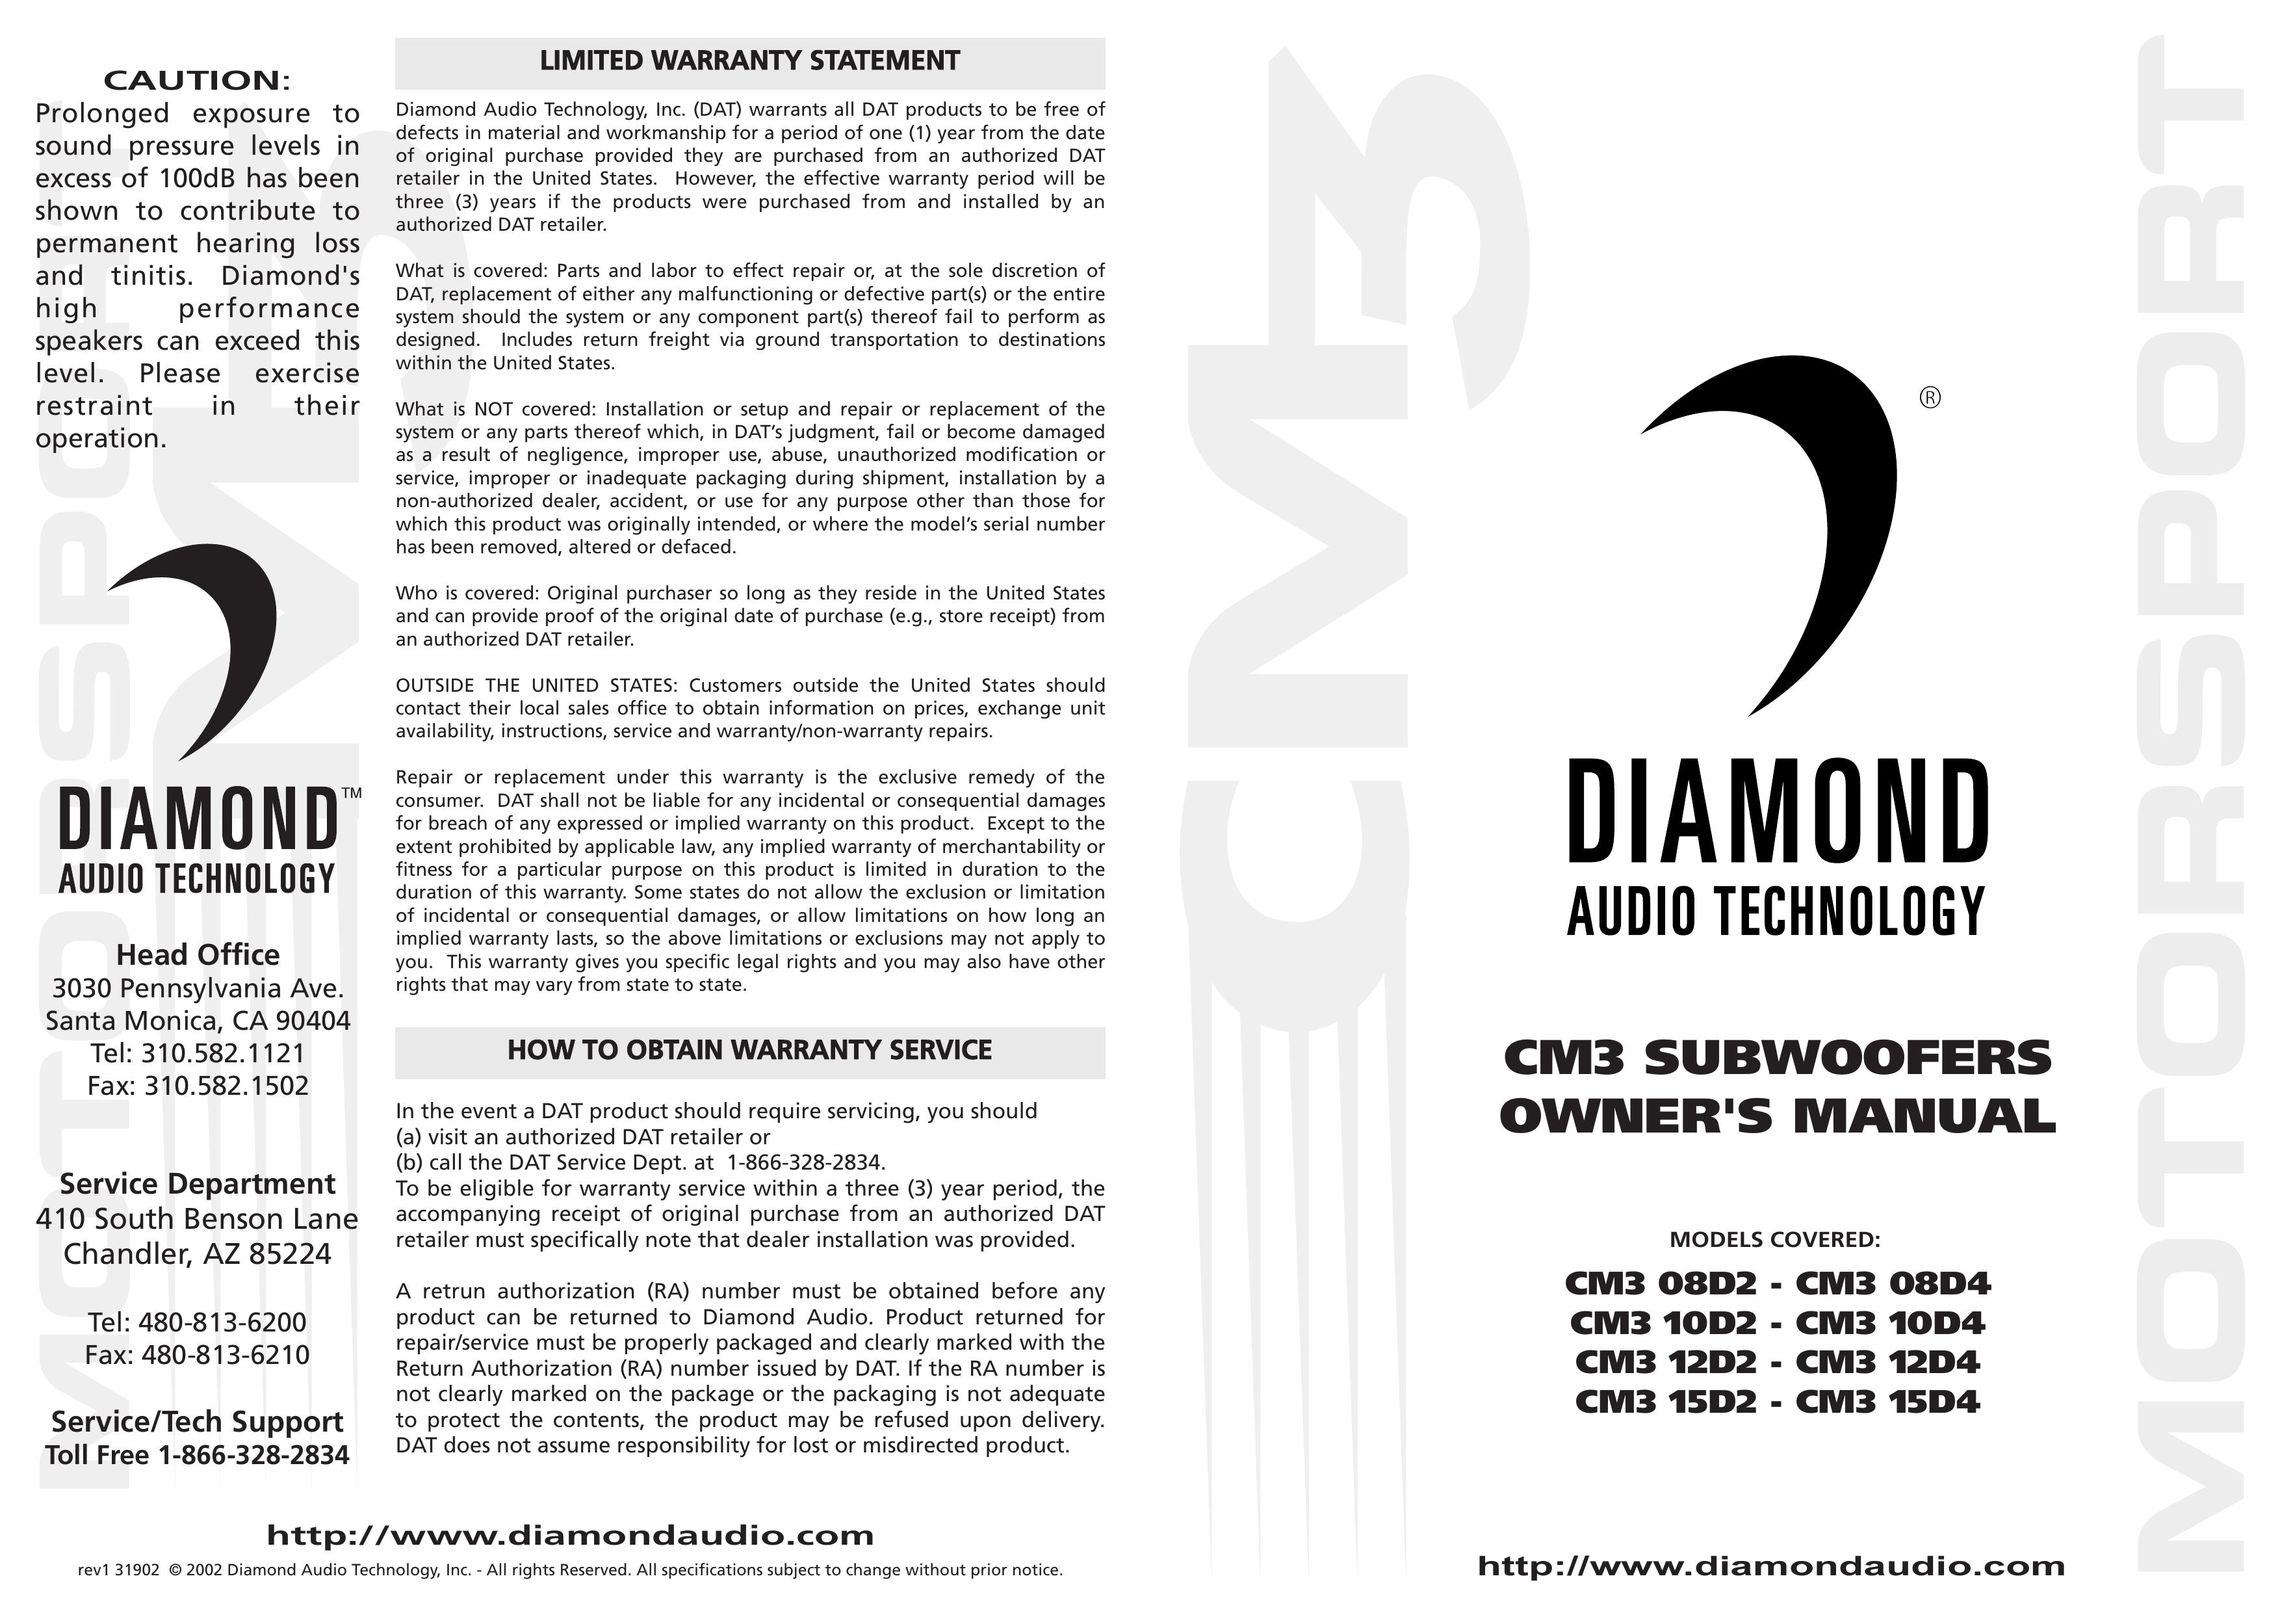 Diamond Audio Technology CM3 08D2 Speaker User Manual